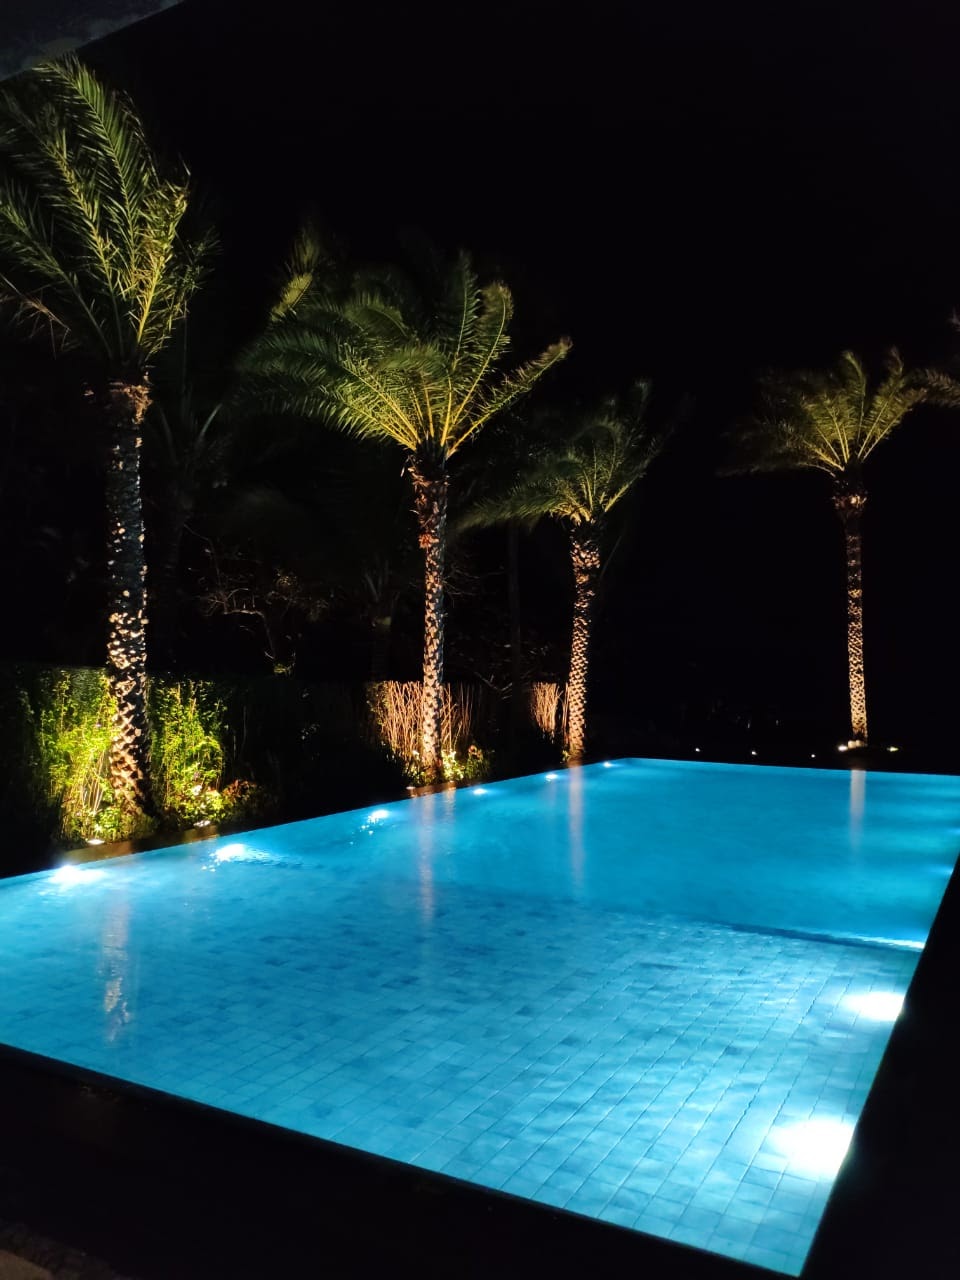 Dimensionamento de iluminação para piscinas - Cristal Led Inox